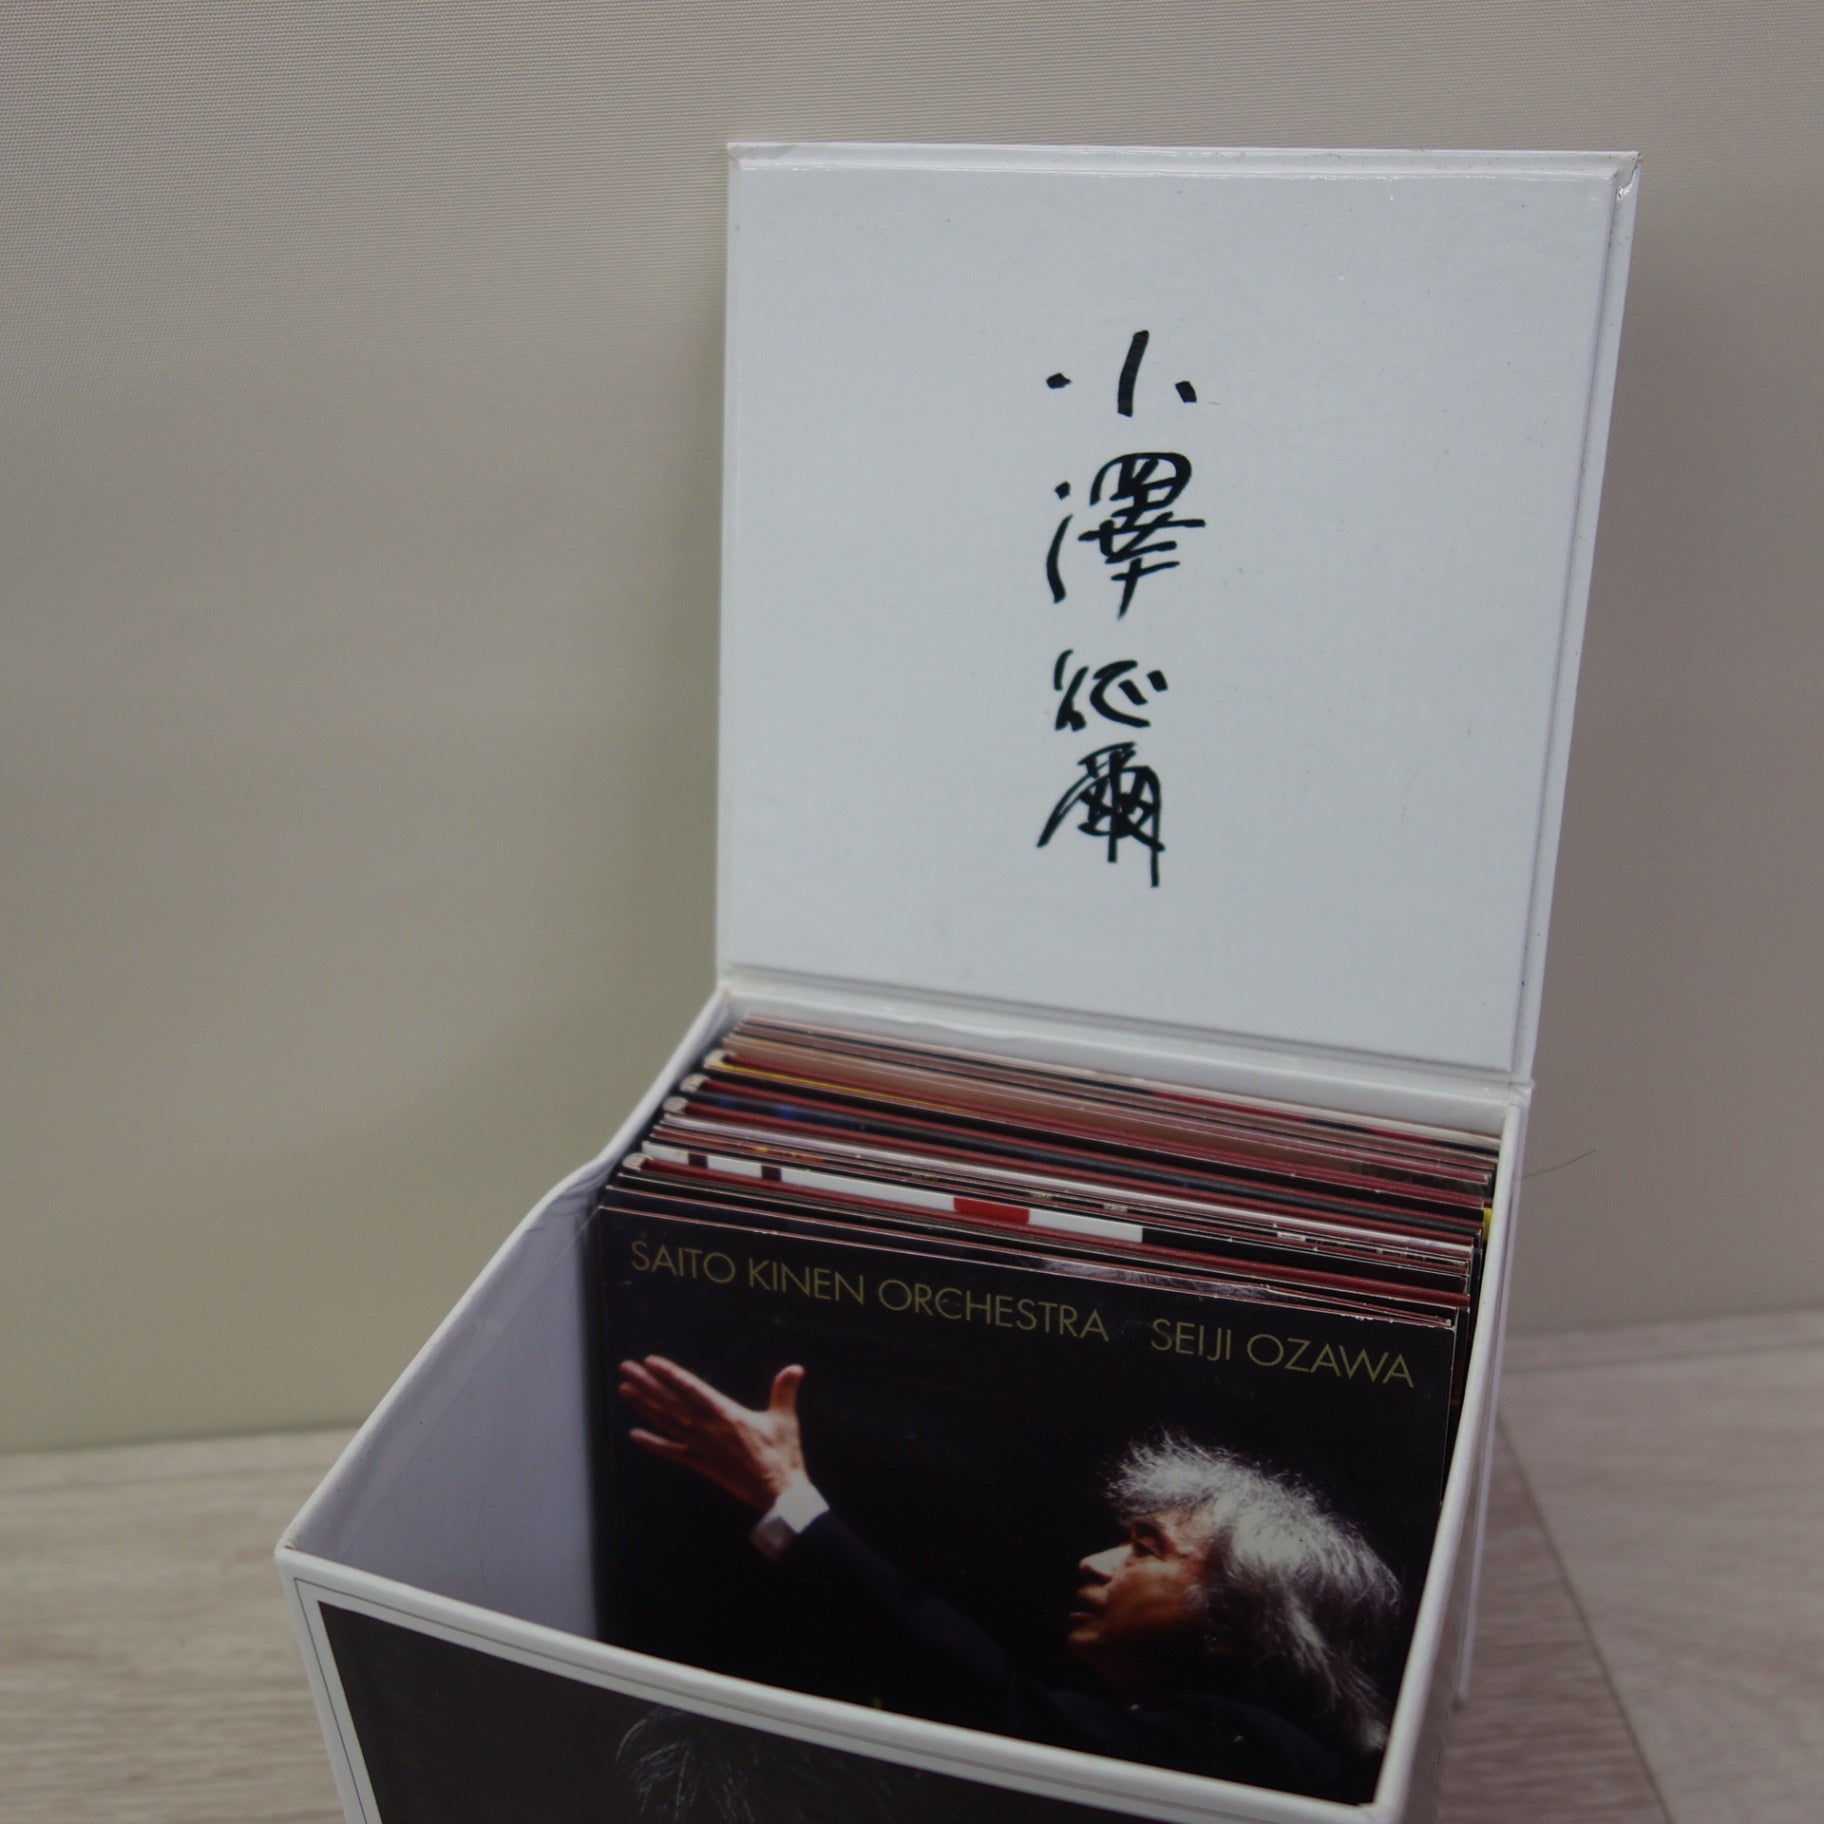 送料無料] キレイ☆SEIJI OZAWA 小澤征爾 THE PHILIPS YEARS CD BOX 